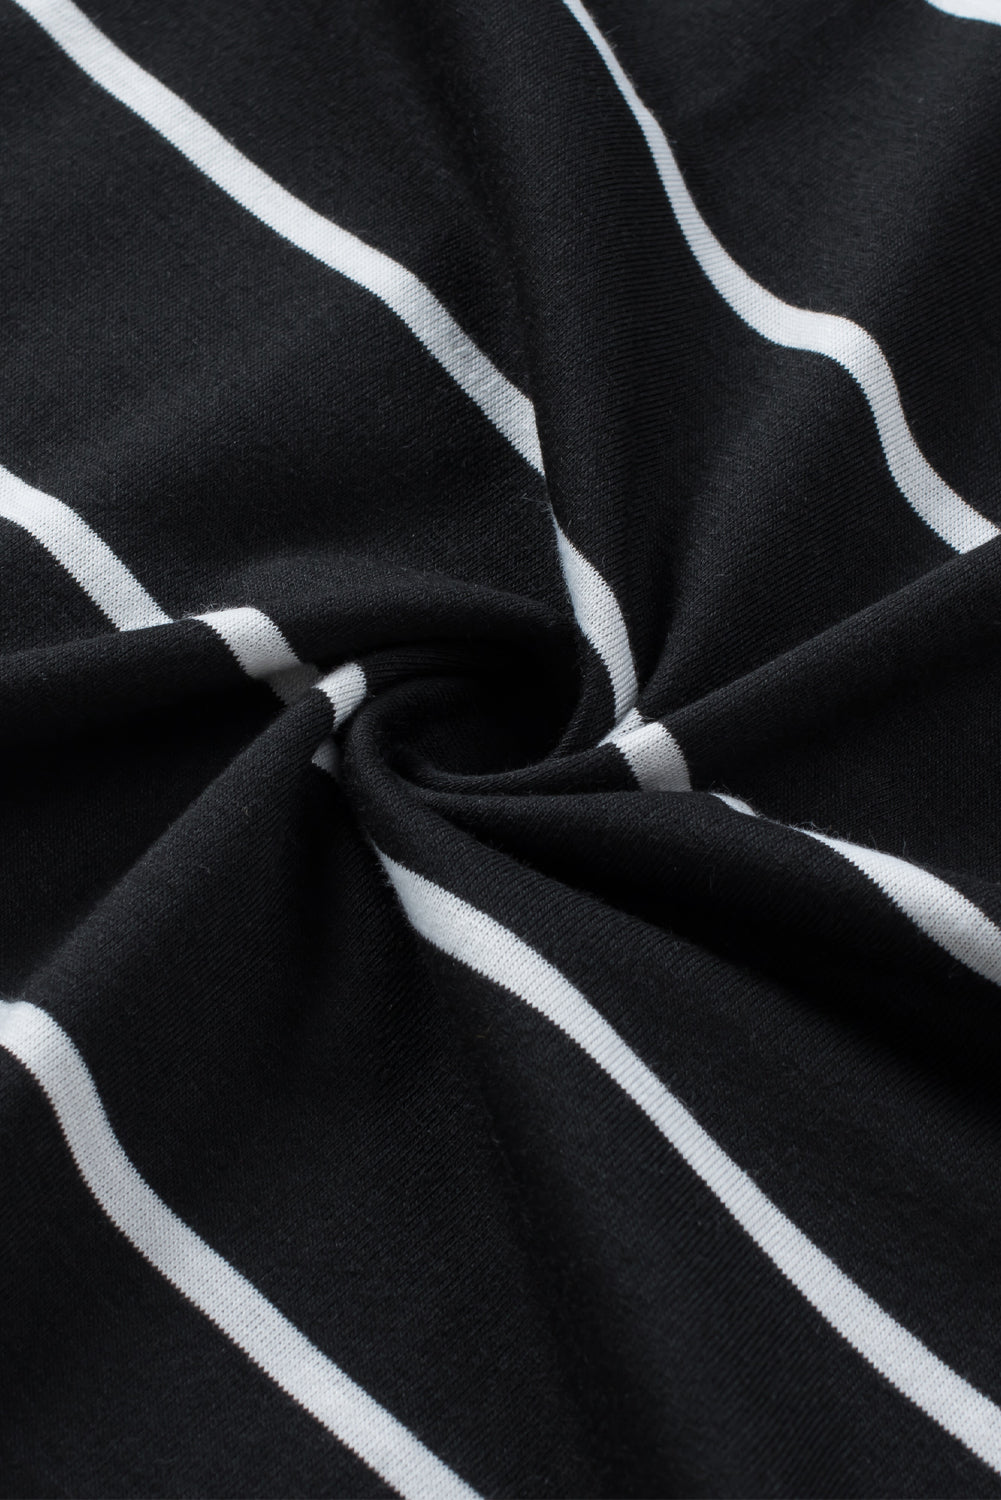 Haut tunique noir à manches courtes et poches latérales imprimées à rayures